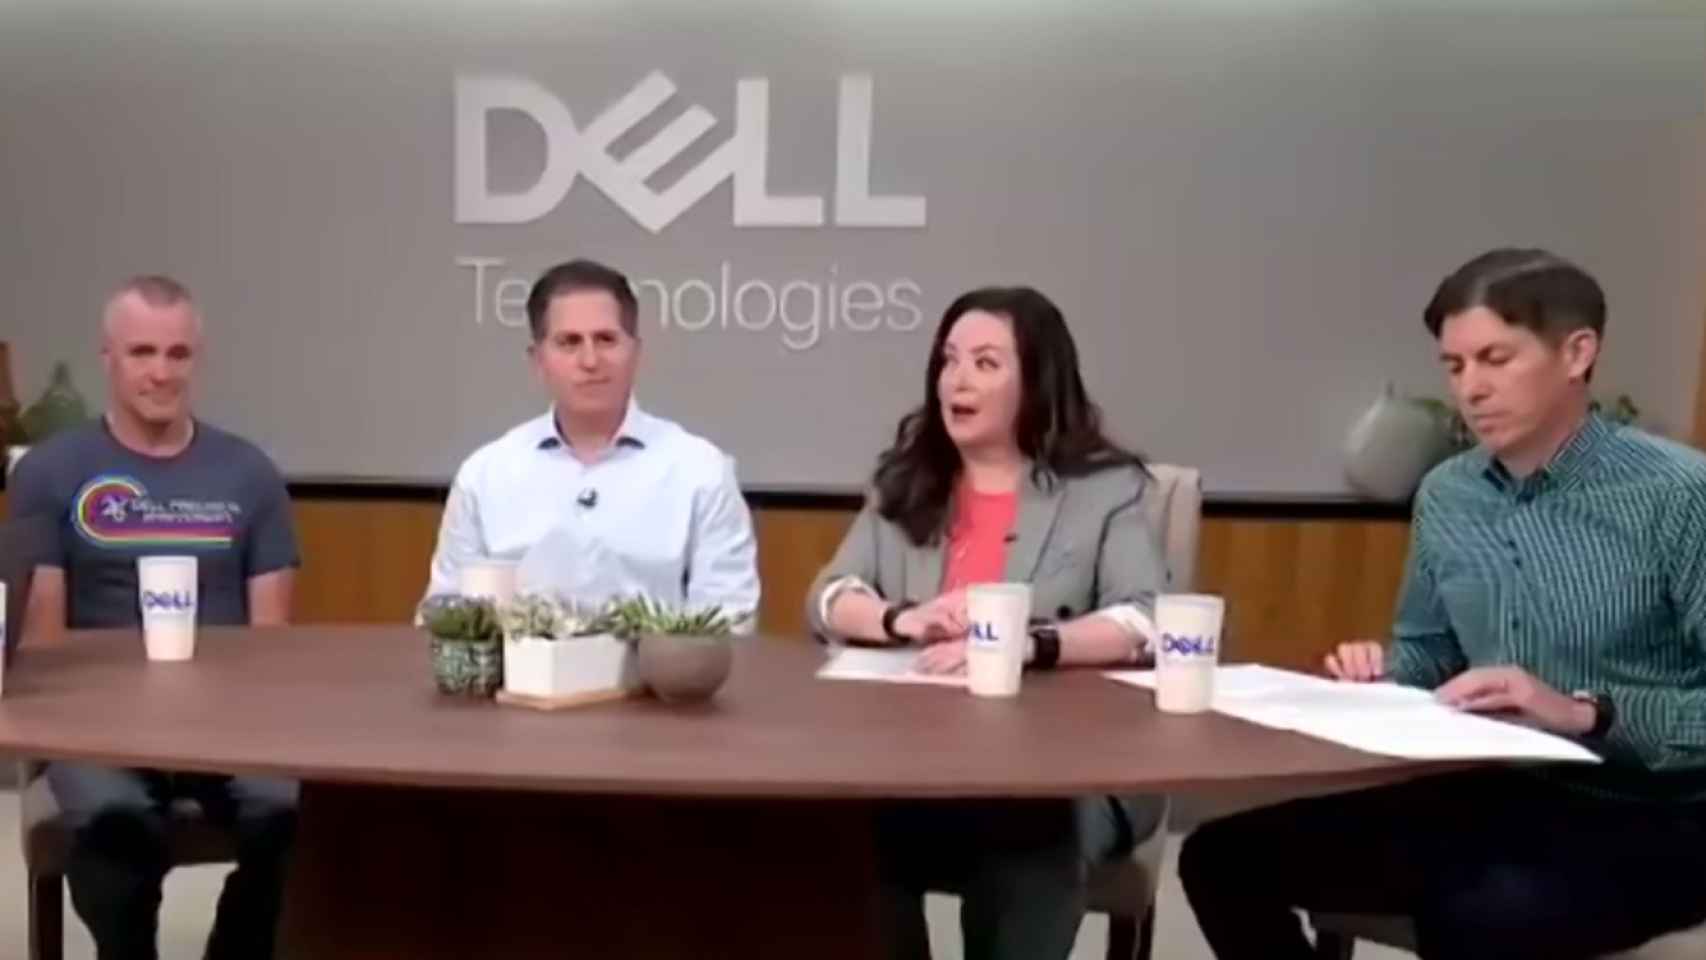 El plantel de directivos de Dell Technologies que atendió a la prensa internacional durante su Tech Summit, incluyendo a sus dos coCEO, a su CMO y a su fundador, Michael Dell.